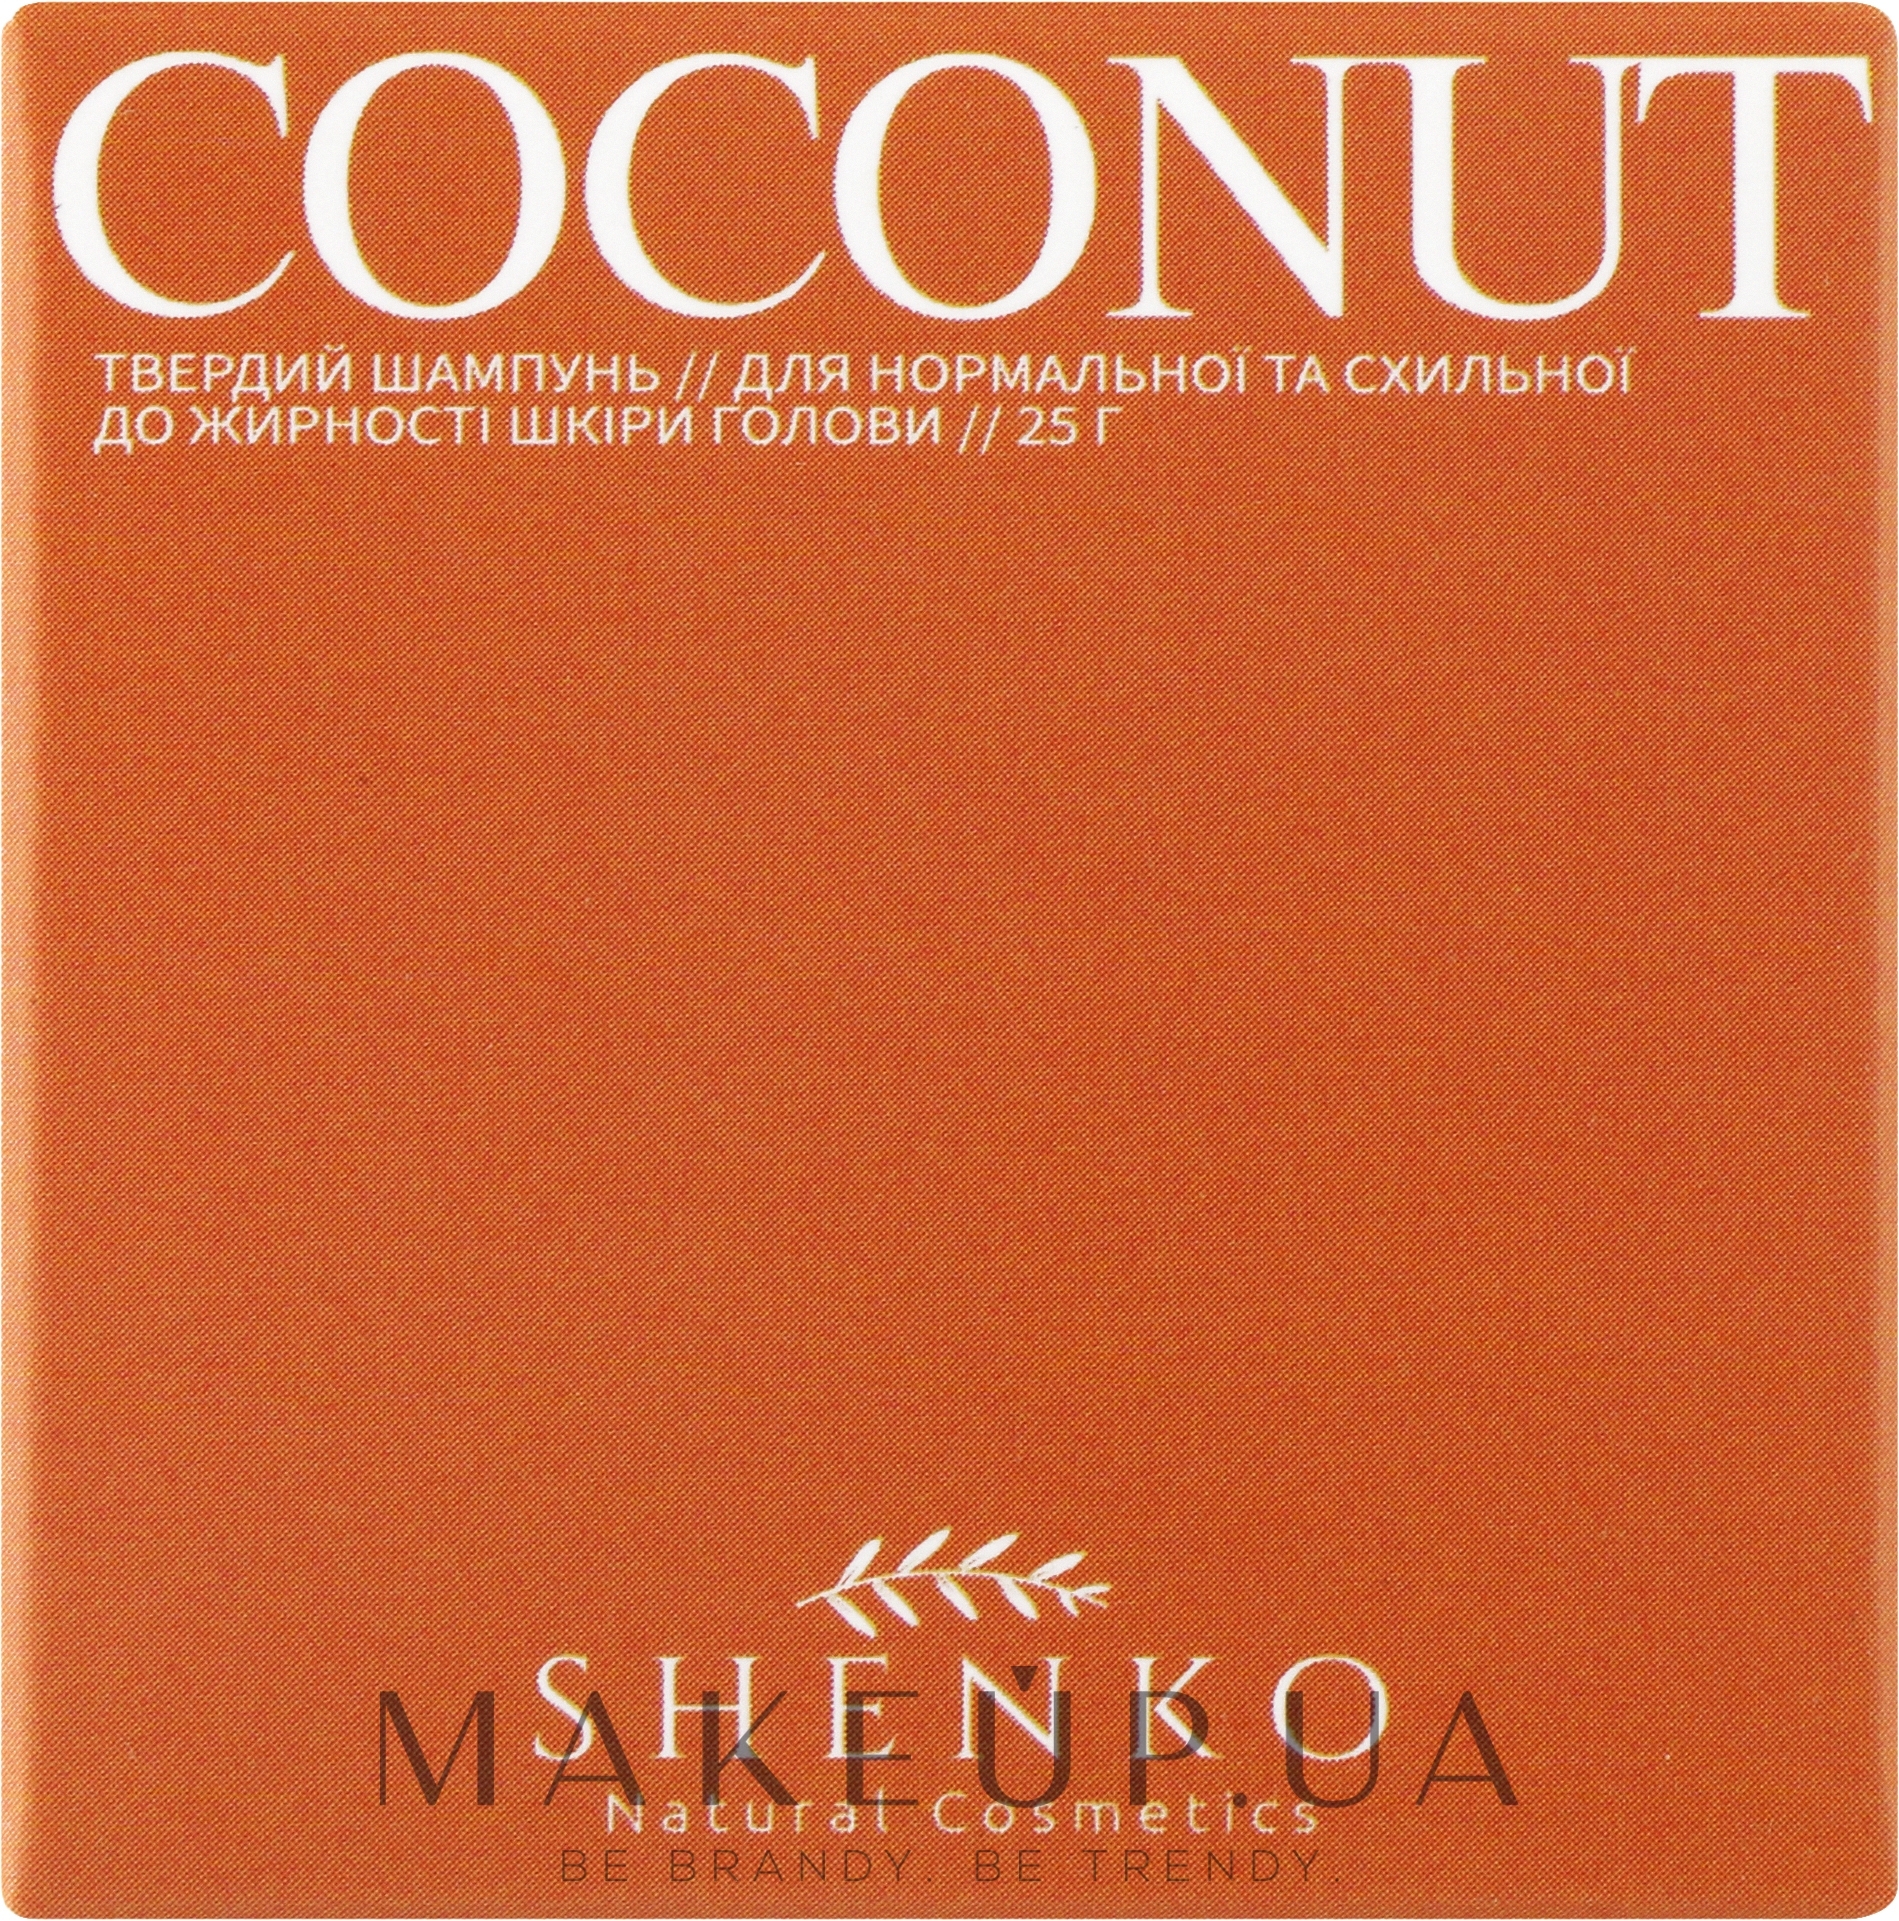 Твердий шампунь з біоліпідним комплексом "Coconut" - Shenko Coconut Shampoo — фото 25g